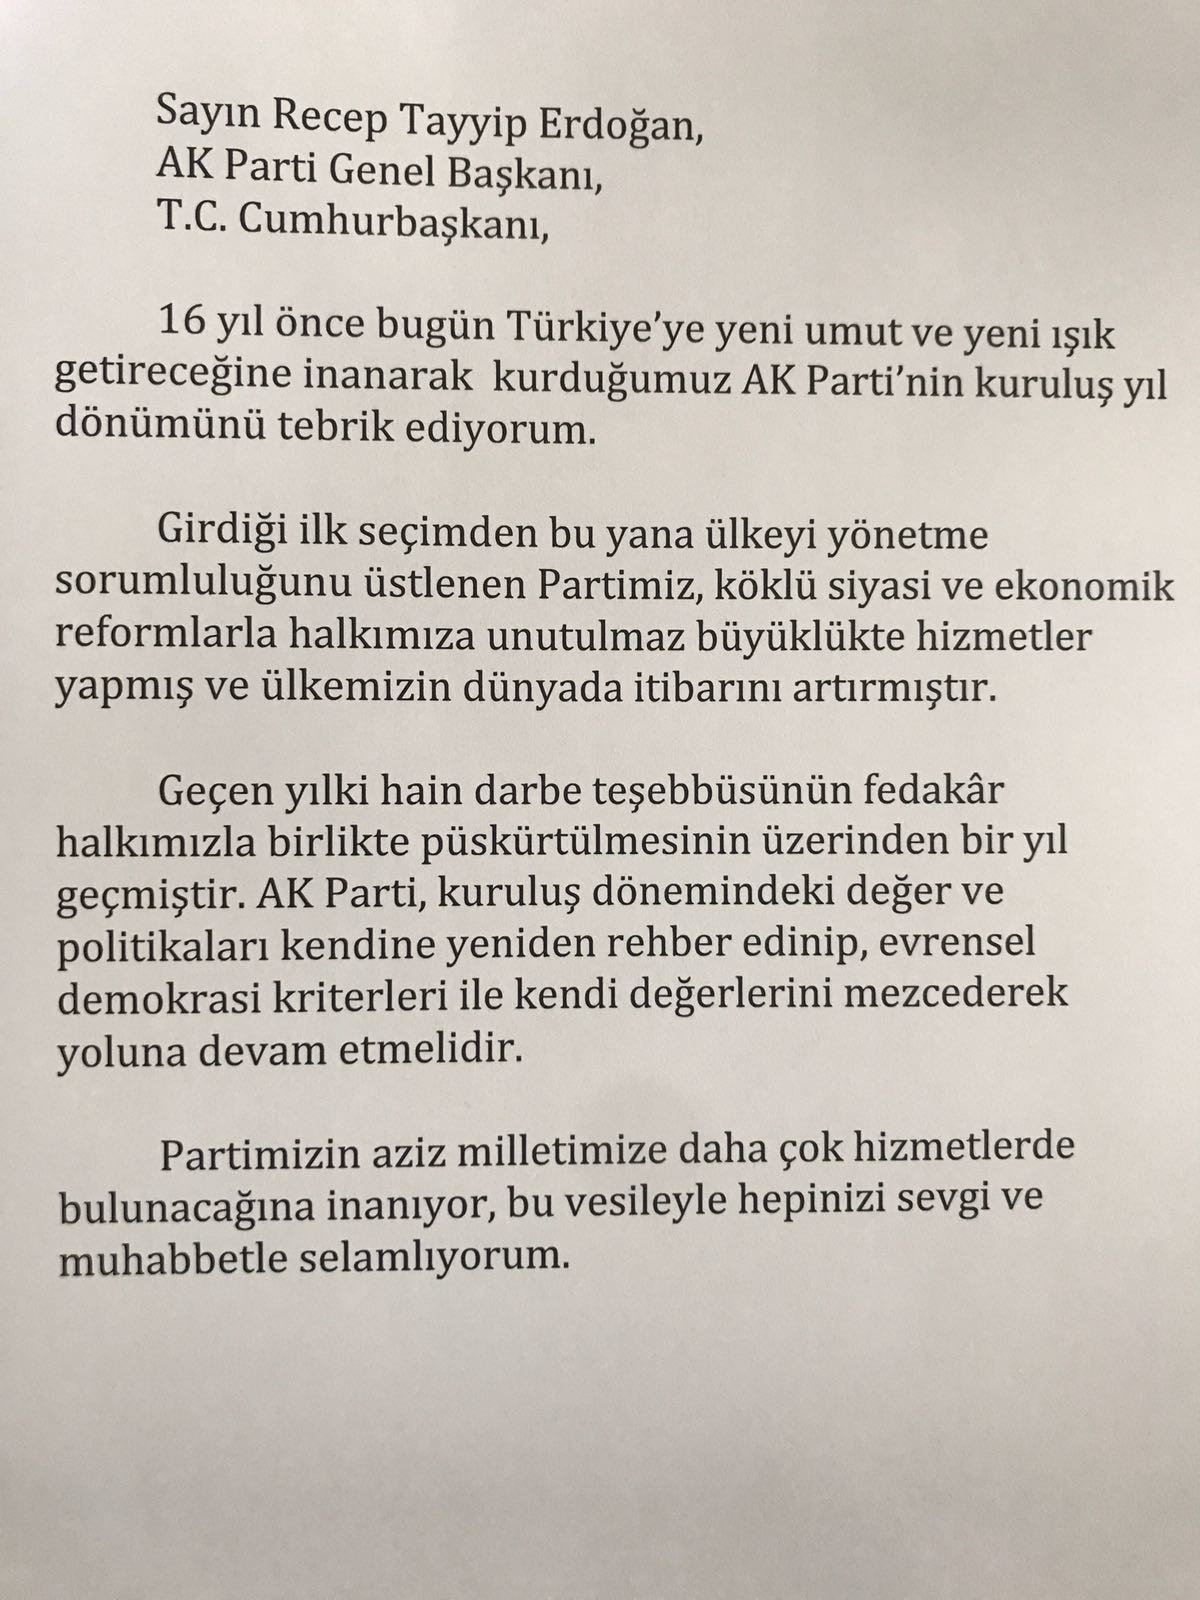 Abdullah Gül'ün Ak Parti'ye gönderdiği kuruluş yıl dönümü mesajı